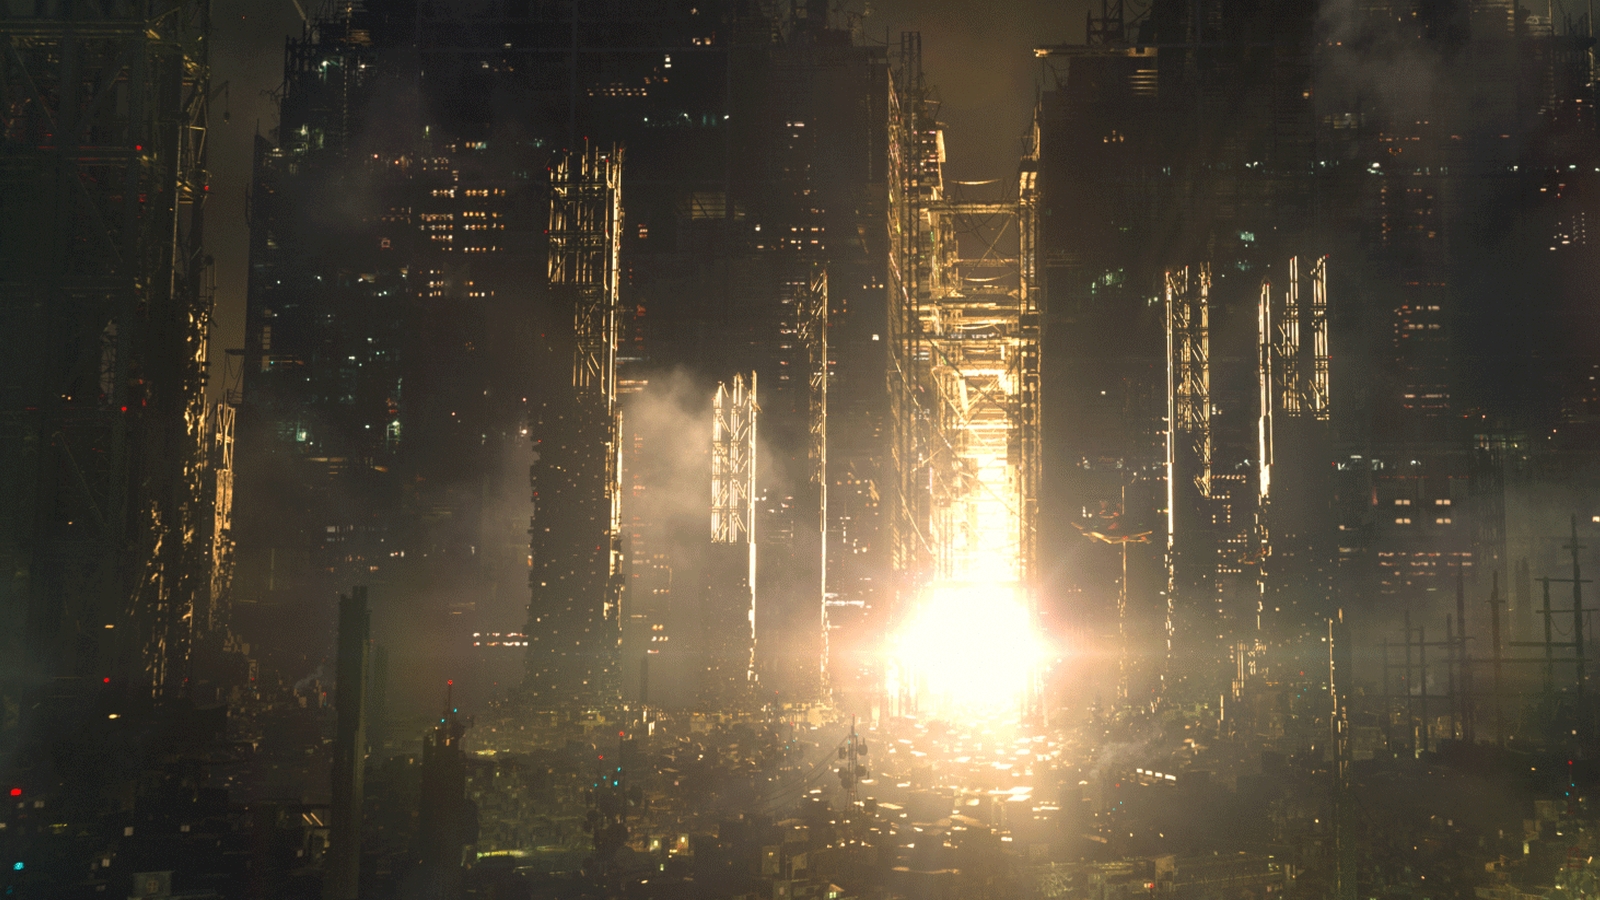 Deus Ex Mankind Divided environment render